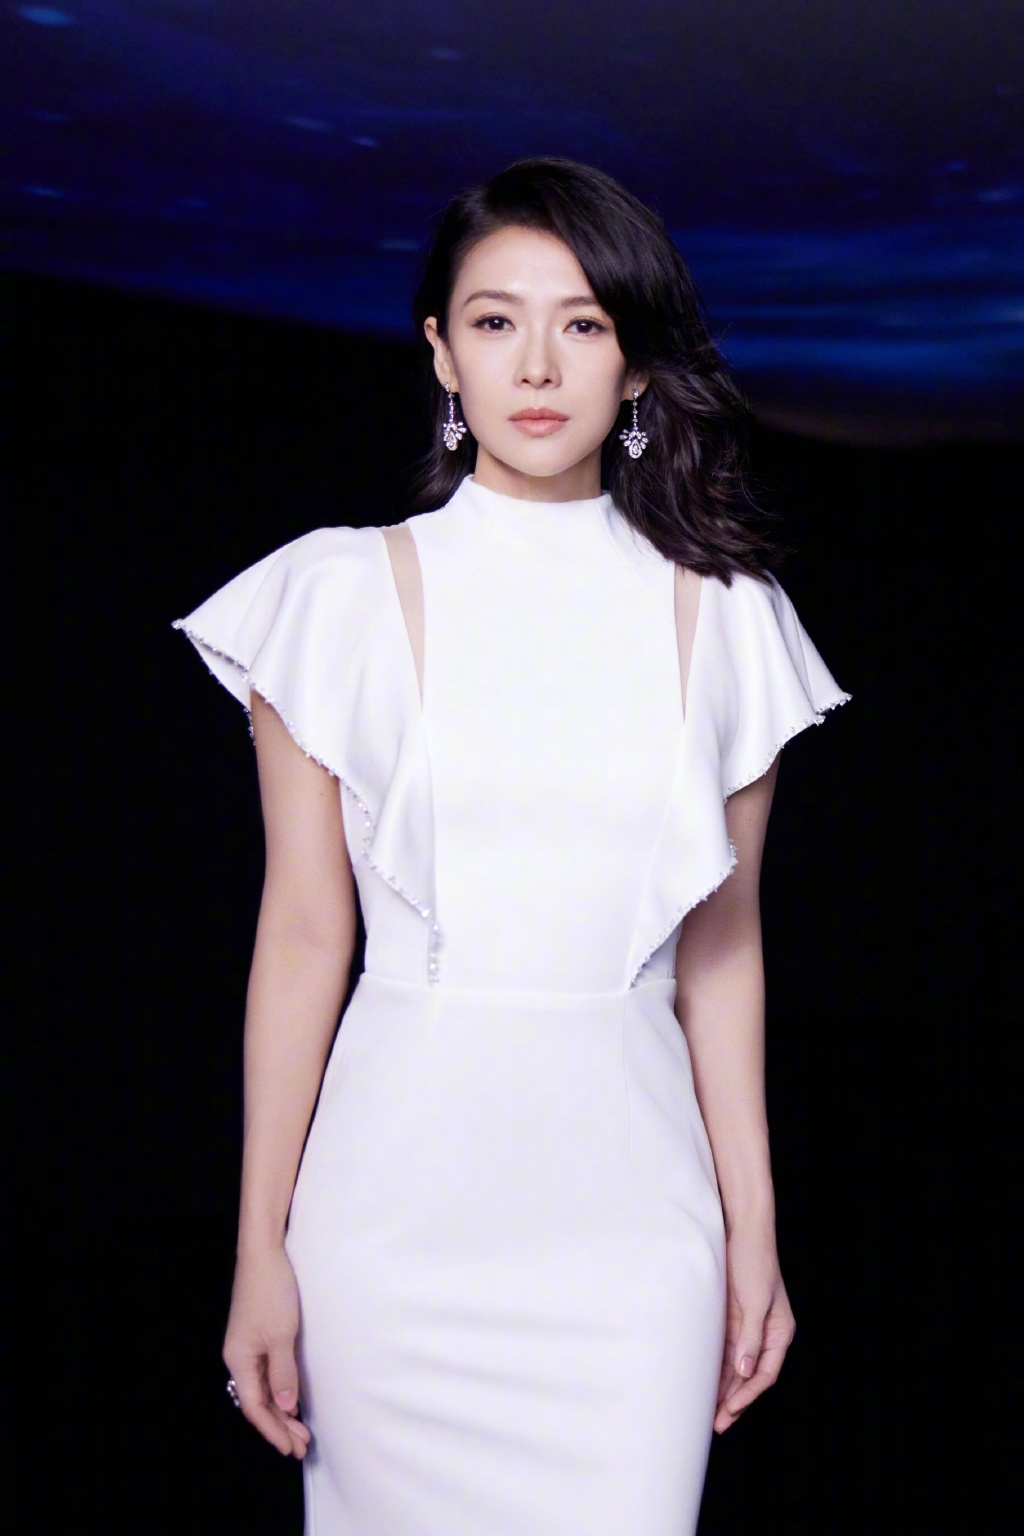 章子怡出席品牌活动,简约白色礼服,华丽珠宝,优雅大气的姿态